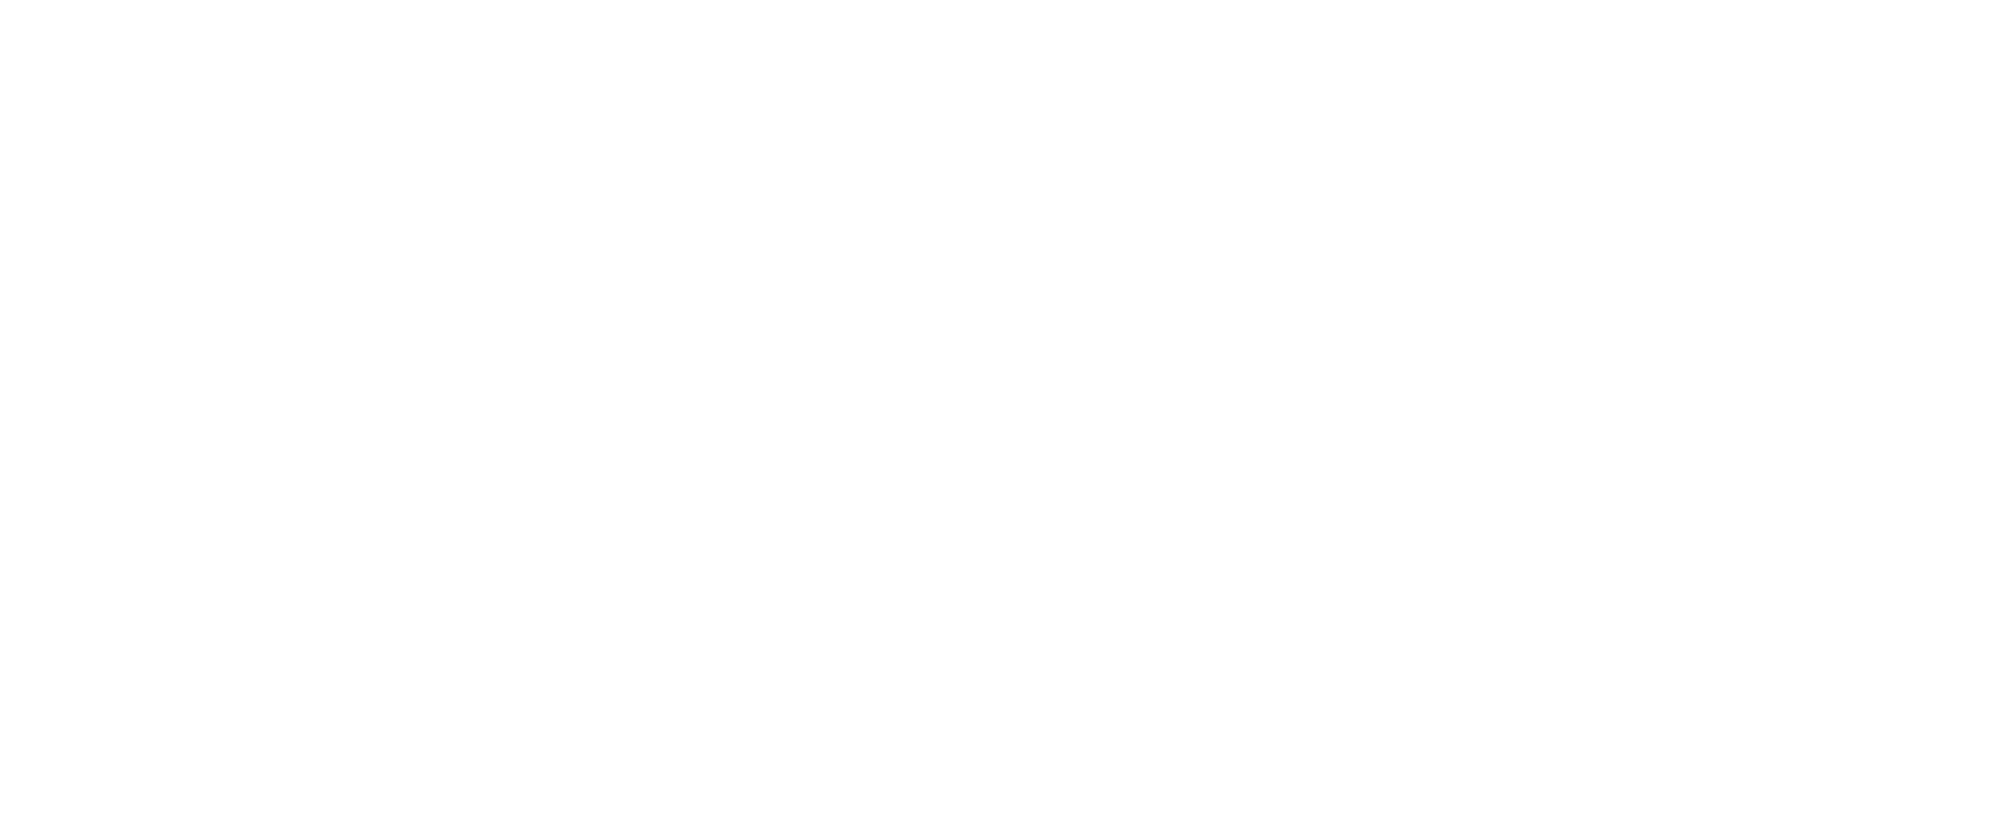 Behrman Communications